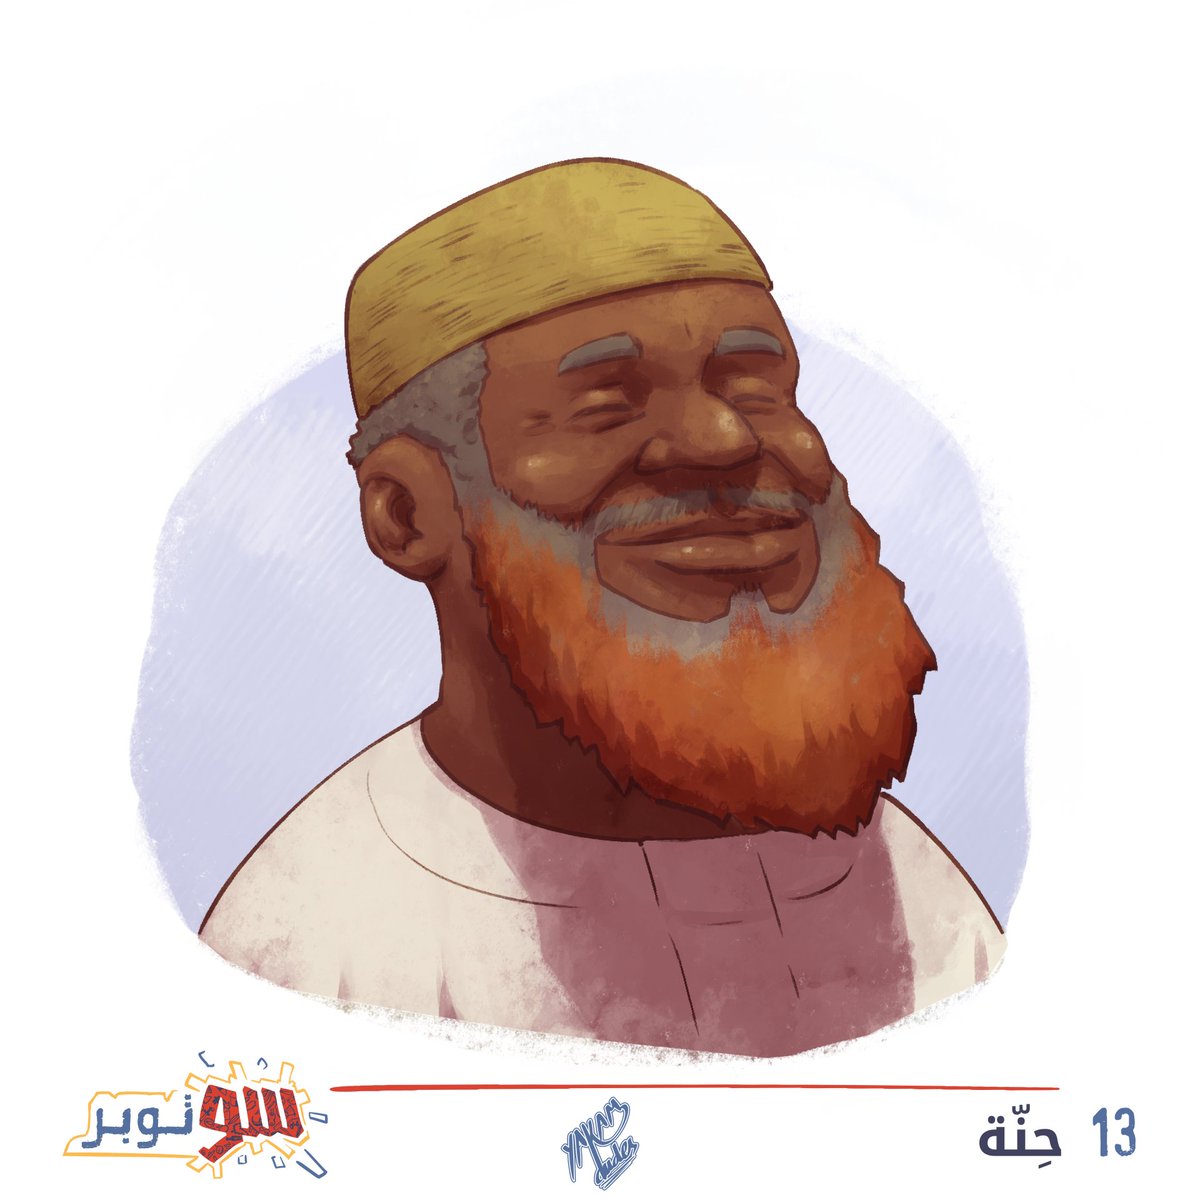 #SUtober2023 13: حنة #SUtober #سوتوبر #سوتوبر2023 #السودان #حنة #خضاب #تخضيب #لحية #تخضيب_الرجال_بالحناء #sudan #henna #beard #sunna #challenge #illustration #digitalart #sudaneseart #sudaneseartist #arabartists #كلنا_رسامين